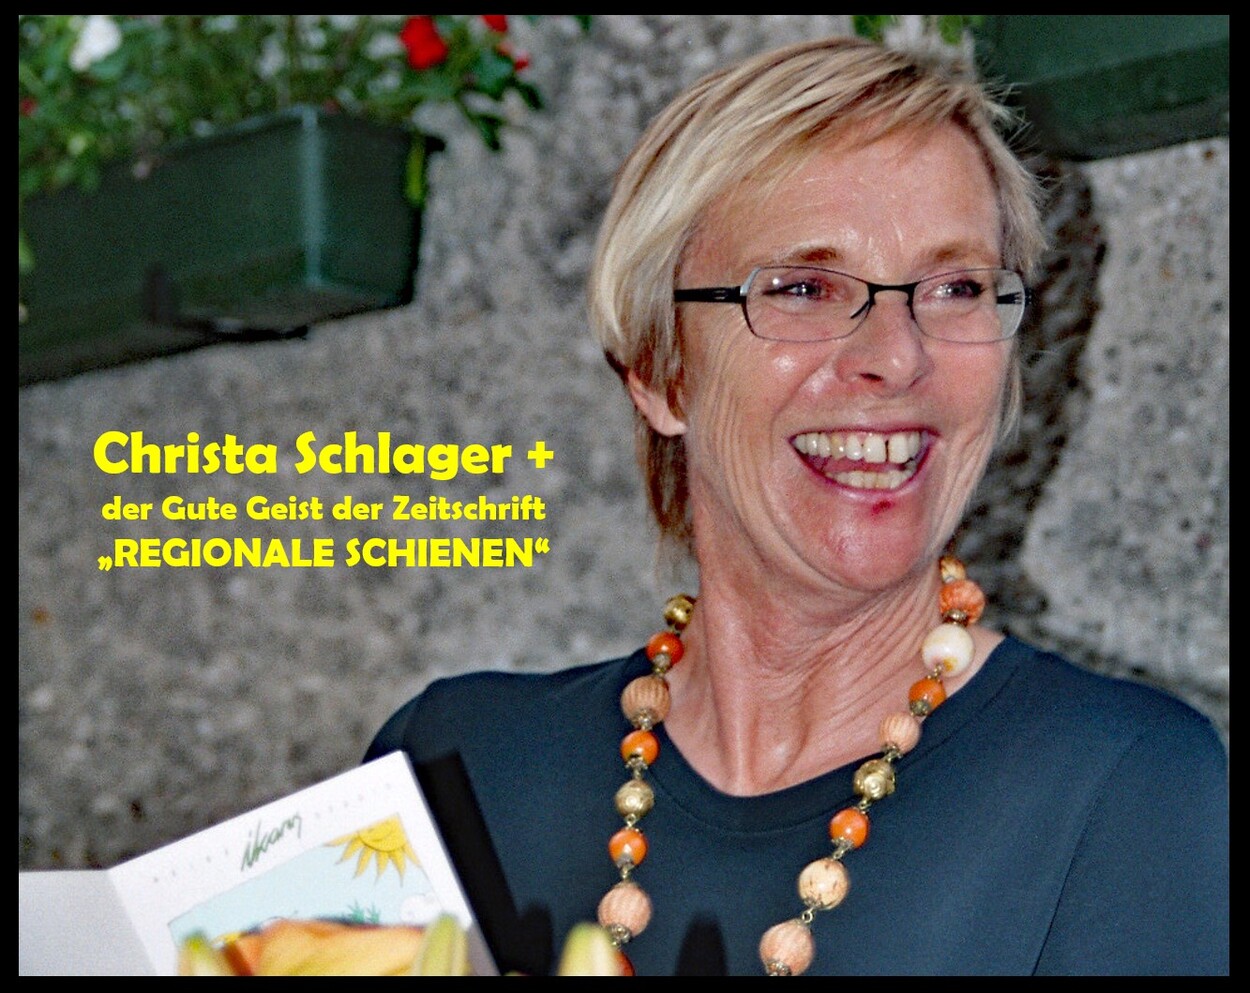 Christa Schlager+ der Gute Geist der Zeitschrift "Regionale Schienen" ist nicht mehr